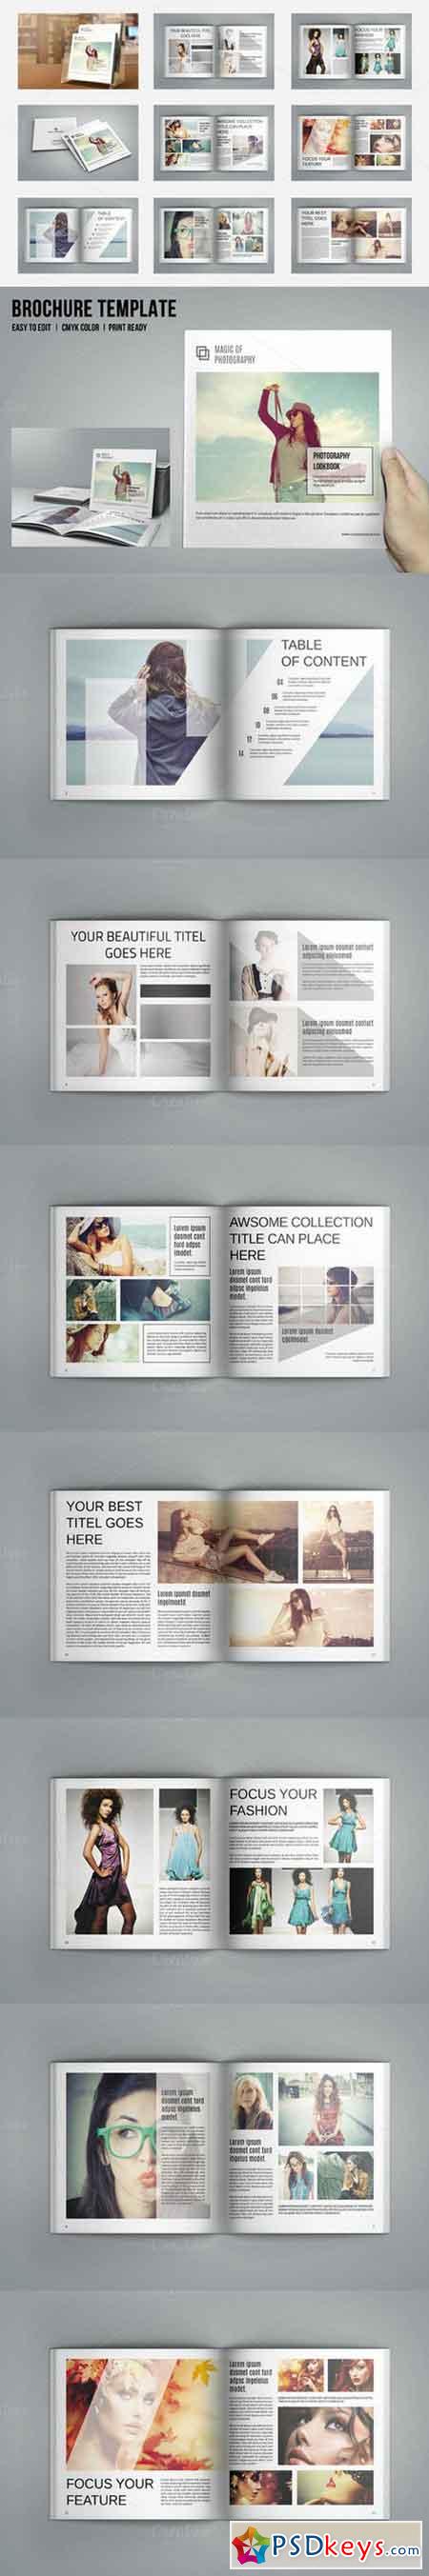 Square Fashion Magazine-V479 653967